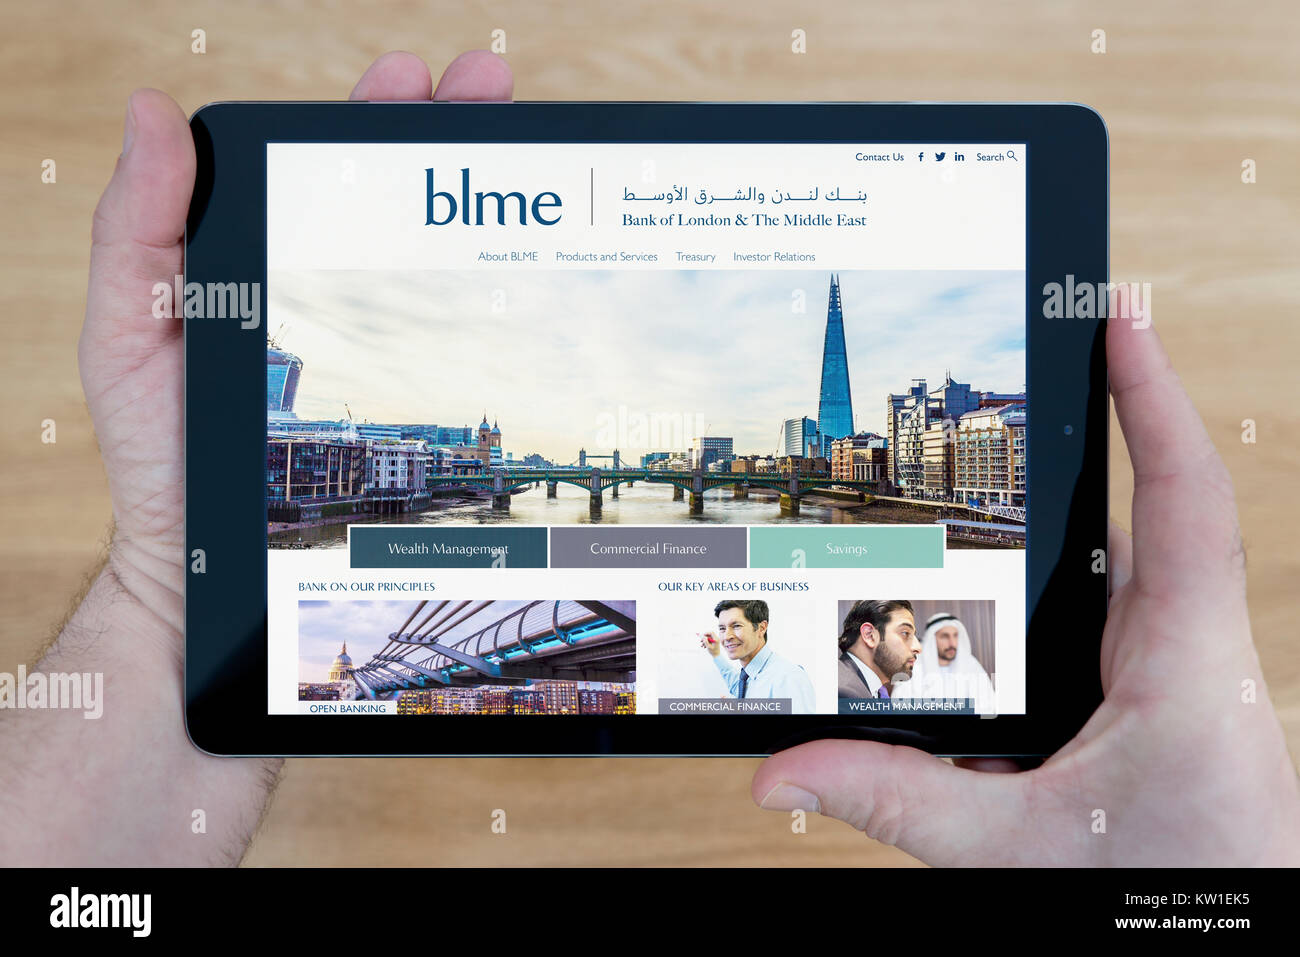 Un homme regarde la banque de Londres et le Moyen-Orient (BLME) site sur sa tablette iPad, l'appareil sur une table en bois page contexte (usage éditorial uniquement) Banque D'Images